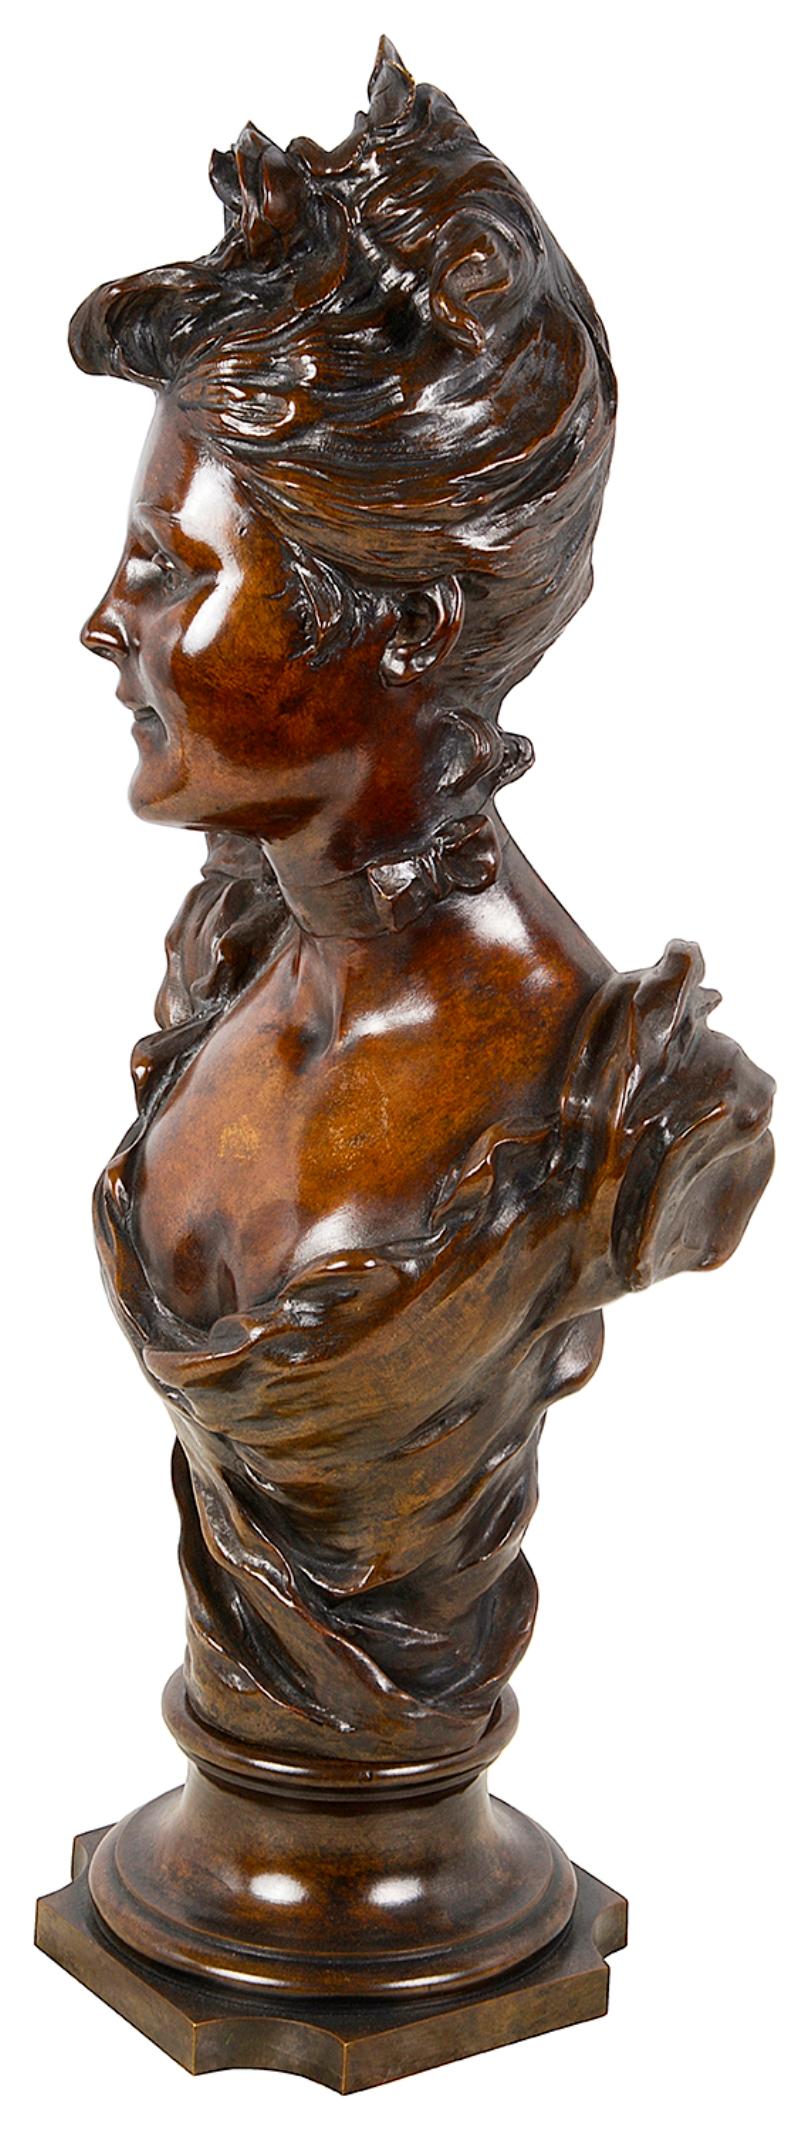 Buste en bronze patiné de bonne qualité du XIXe siècle représentant une jeune femme portant une fleur dans les cheveux, une robe classique et reposant sur une base en sockel.